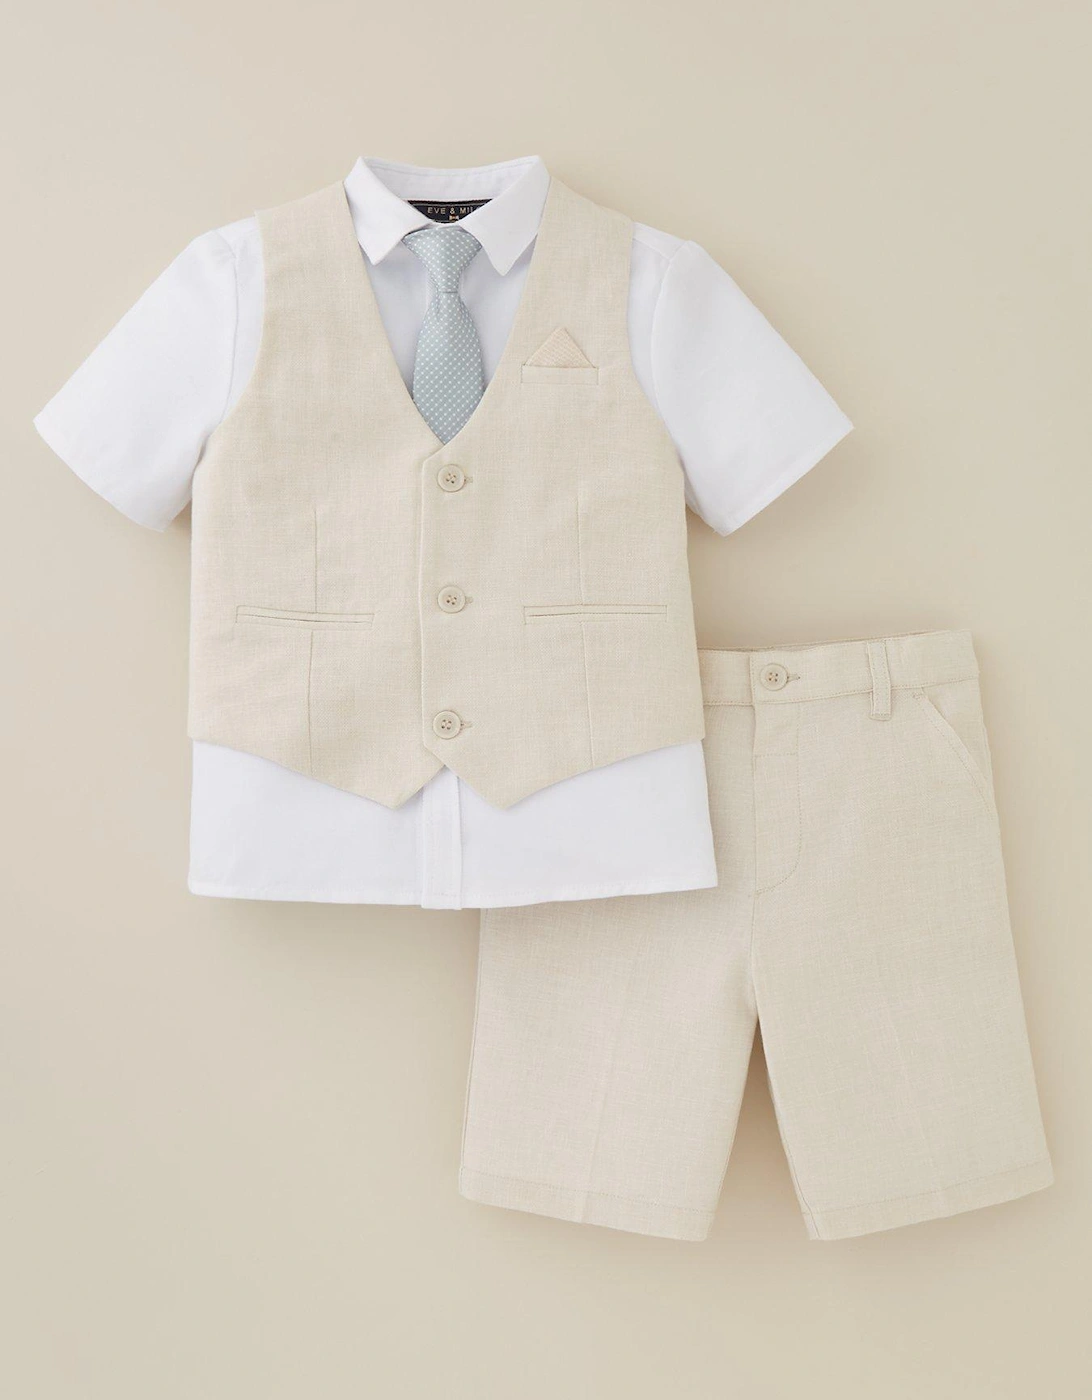 Boys Shorts, Waistcoat, Short Sleeve Shirt and Tie Set - Stone, 2 of 1